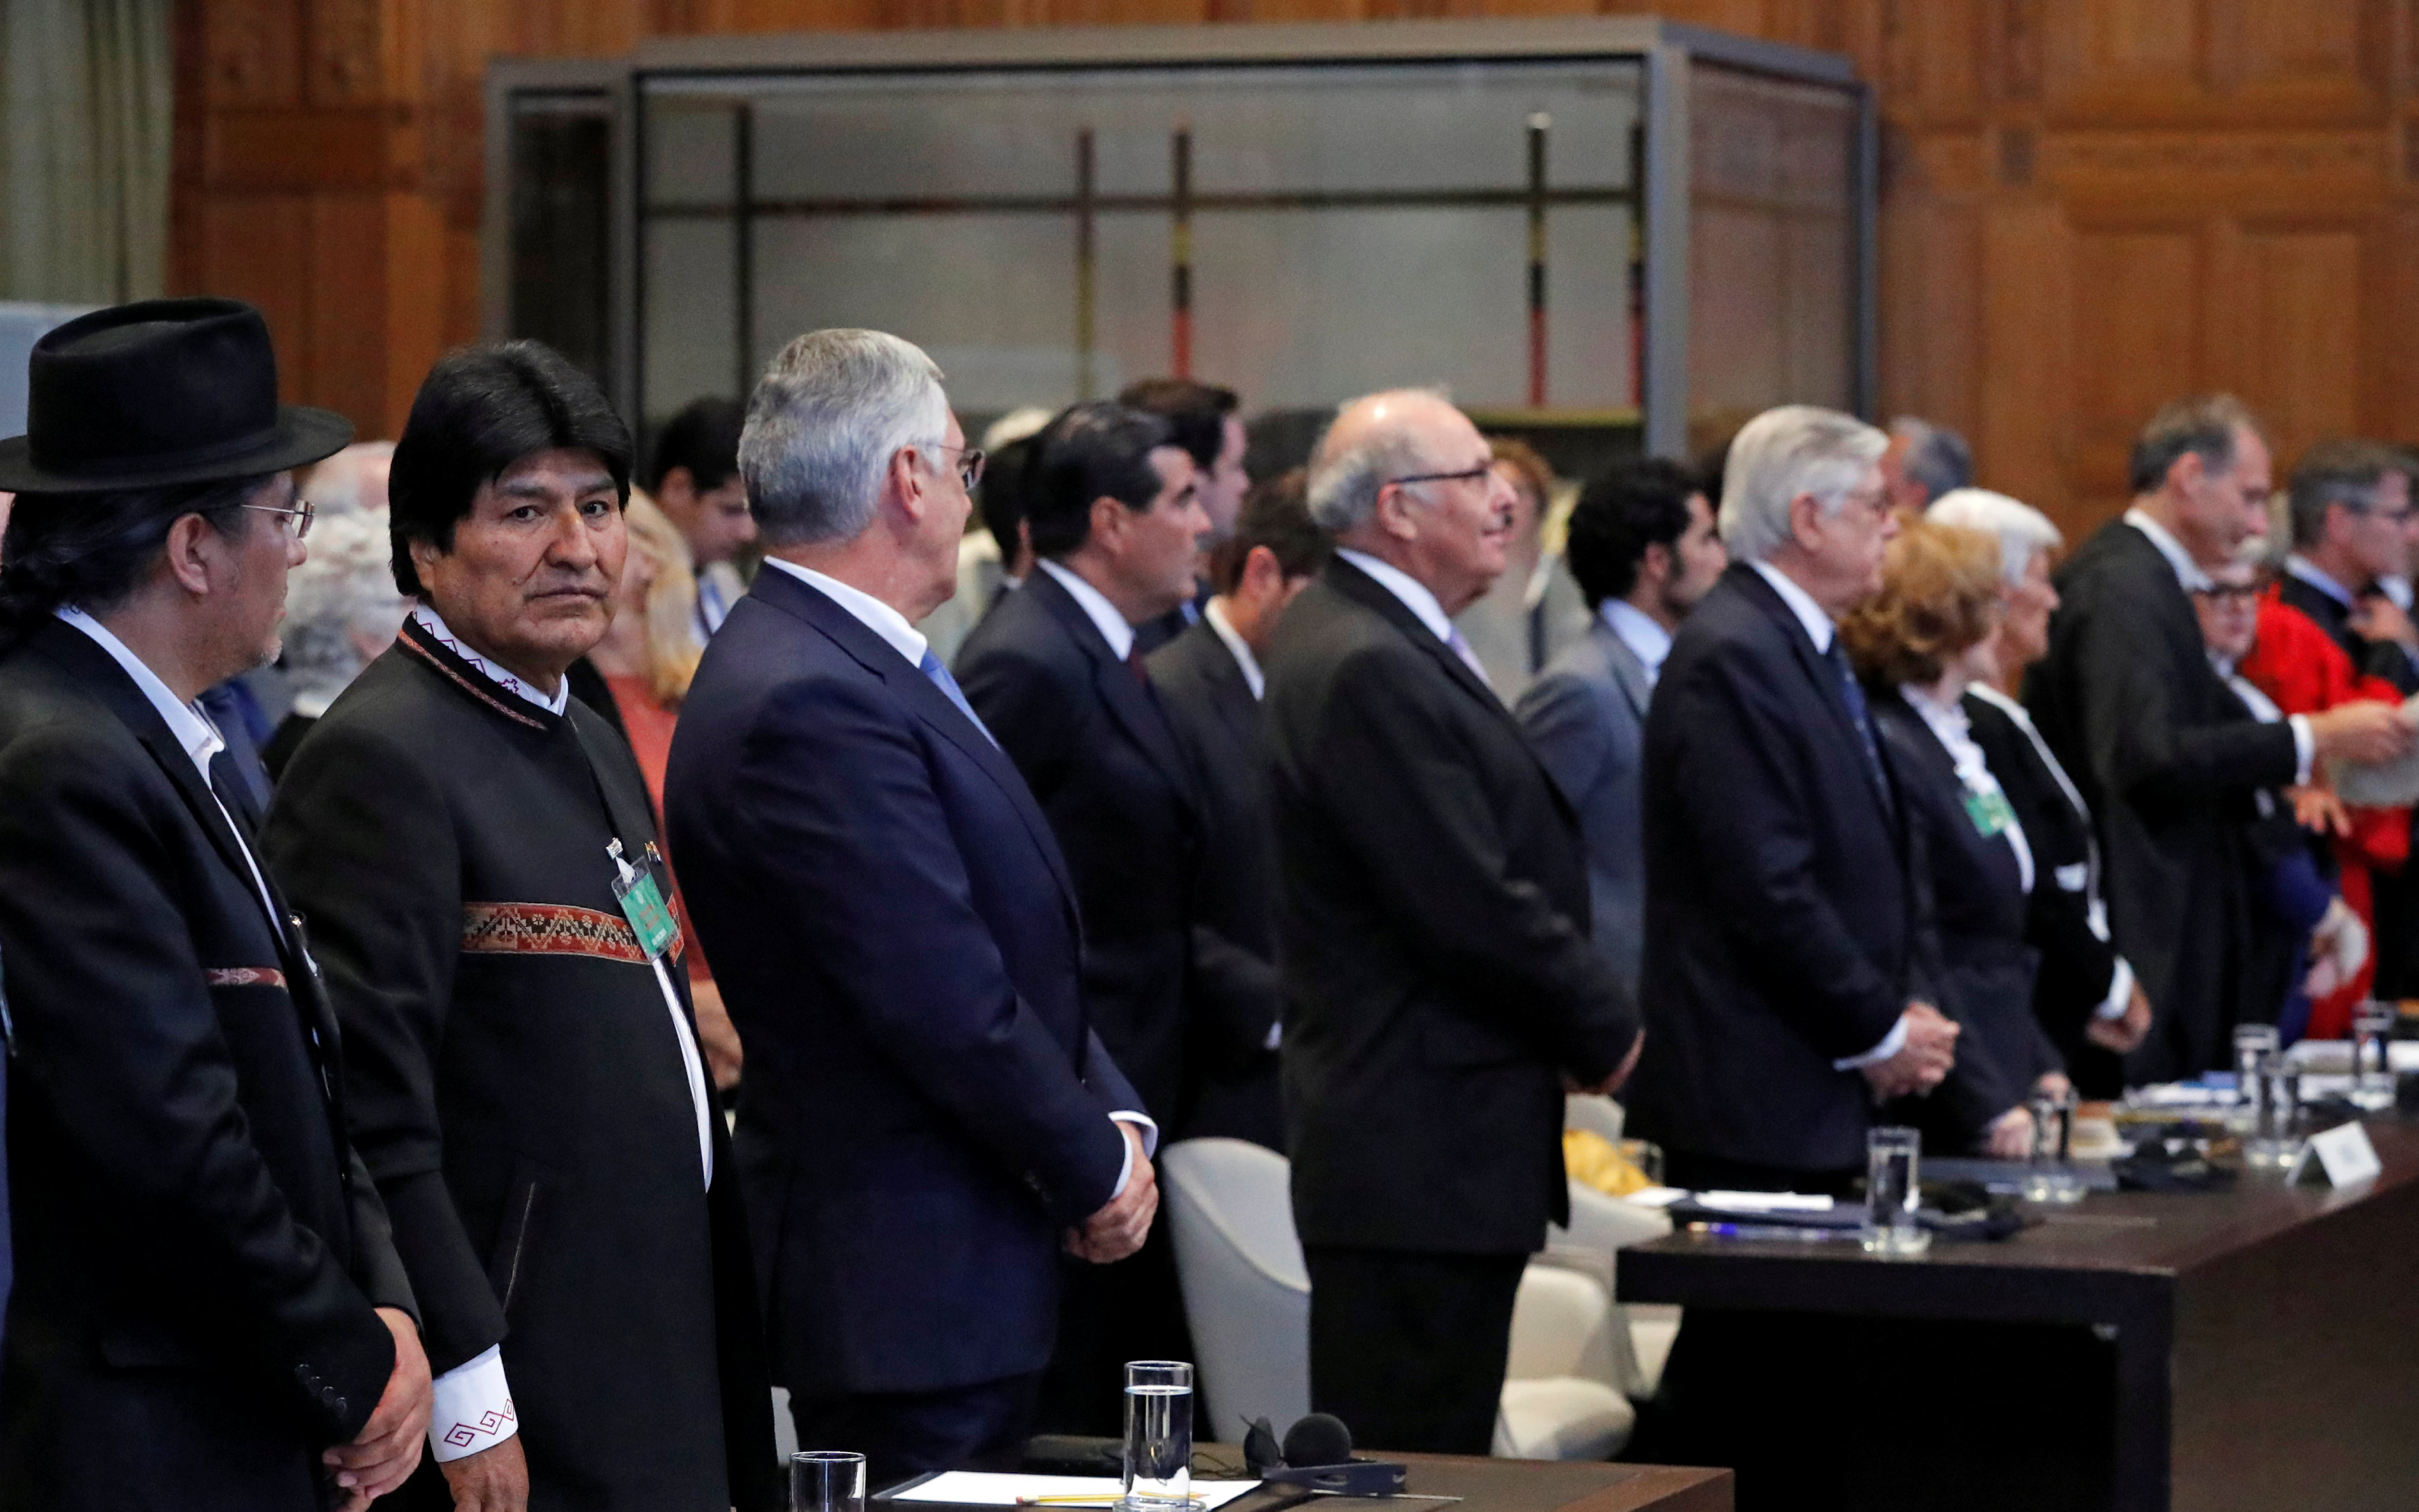 En Video: Así fue como los jueces de la CIJ rechazaron petición de Bolivia sobre acceso al mar